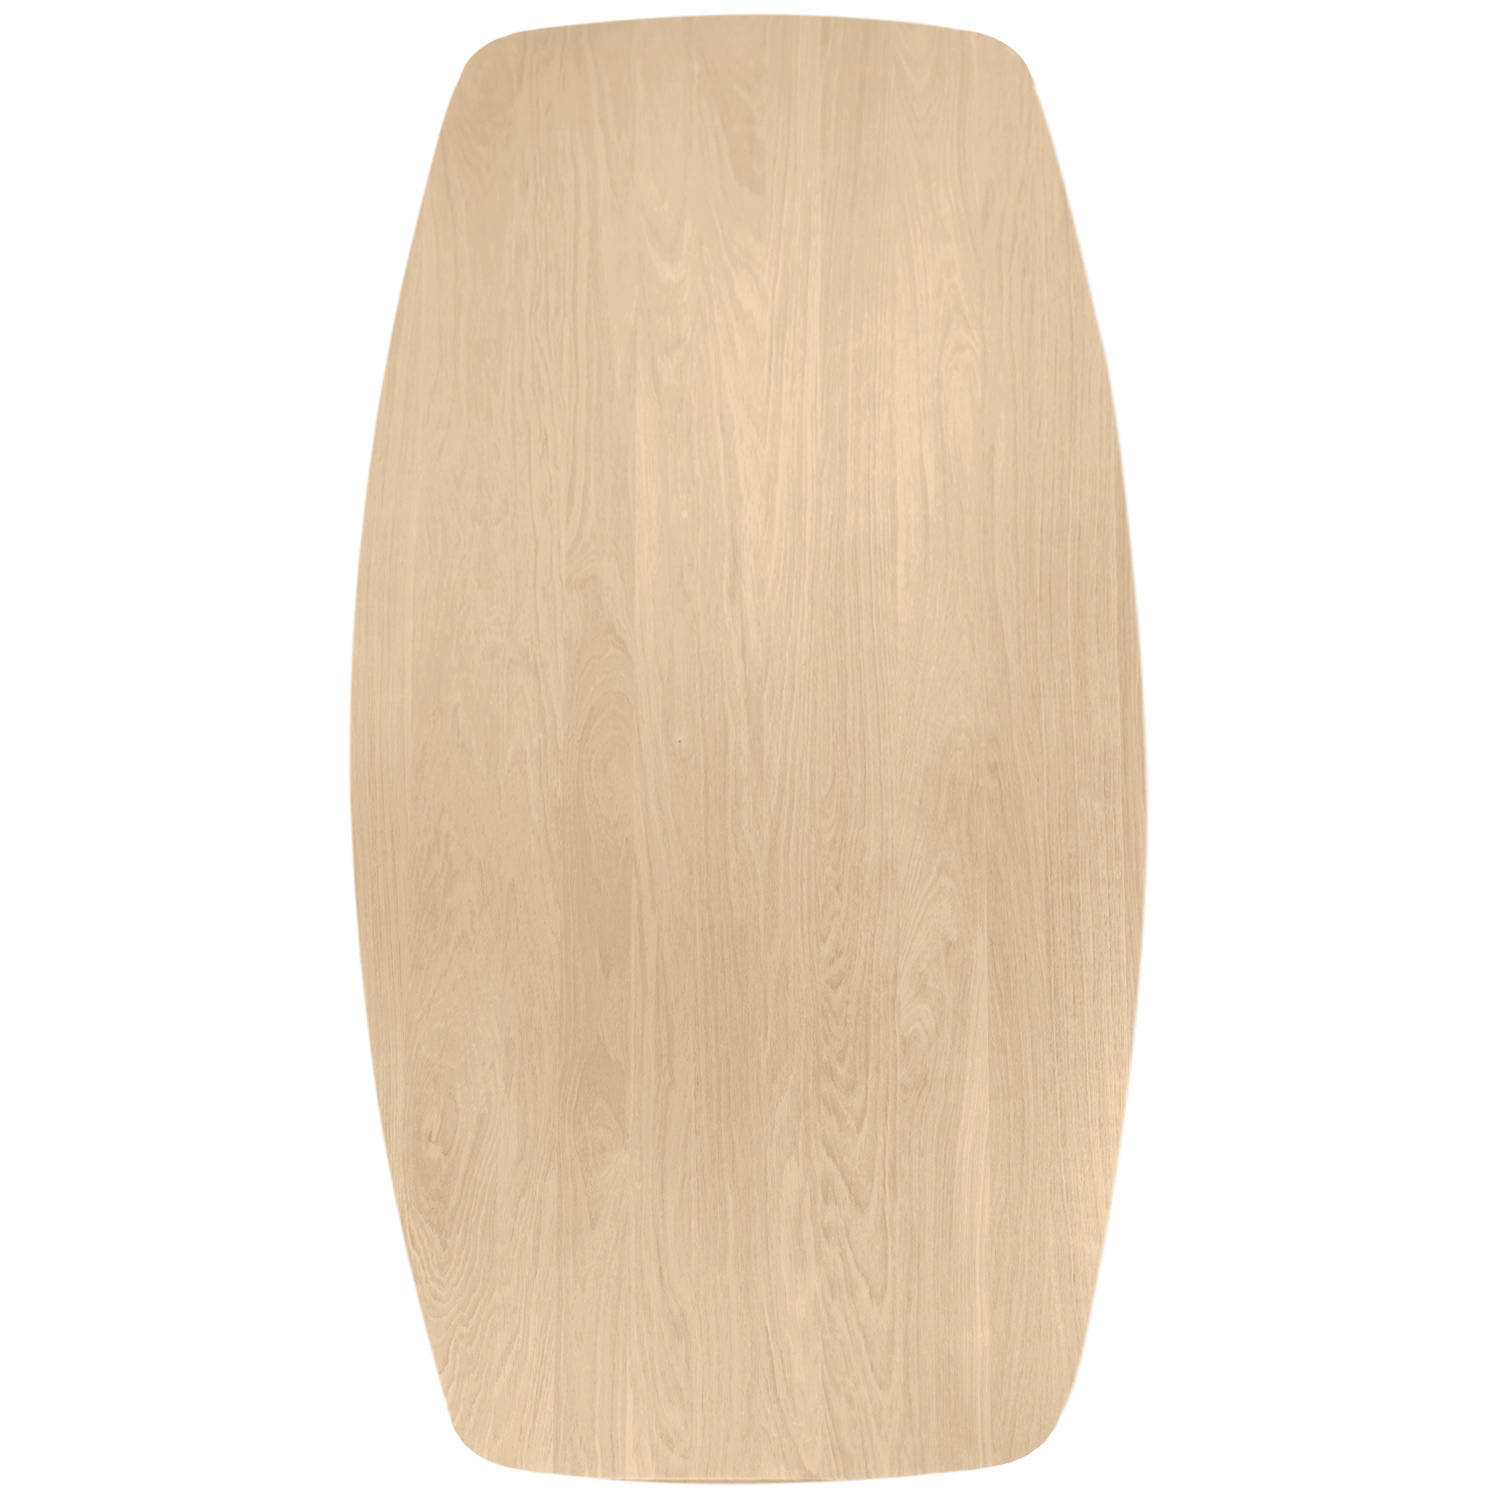  Tischplatte Eiche dänisch-oval - 2,7 cm dick (1-Schicht) - Breite Lamellen (10 - 12 cm breit) - Eichenholz A-Qualität - Bootsform - verleimt & künstlich getrocknet (HF 8-12%) - verschiedene Größen